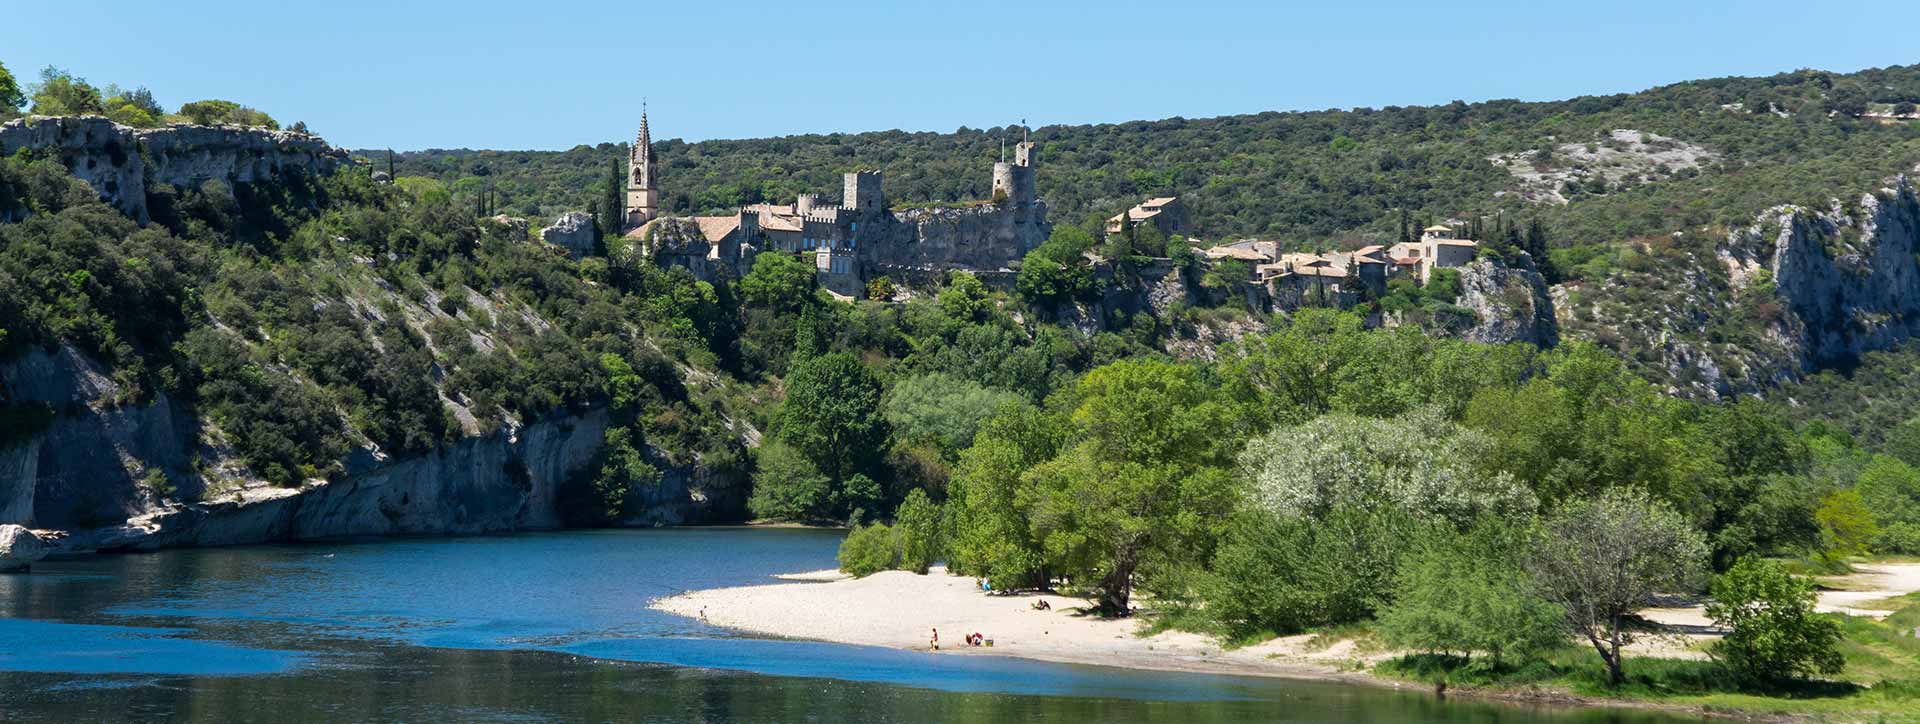 8 gîtes avec piscine dans un des plus beaux villages de France à Aiguèze sur les Gorges de l'Ardèche.